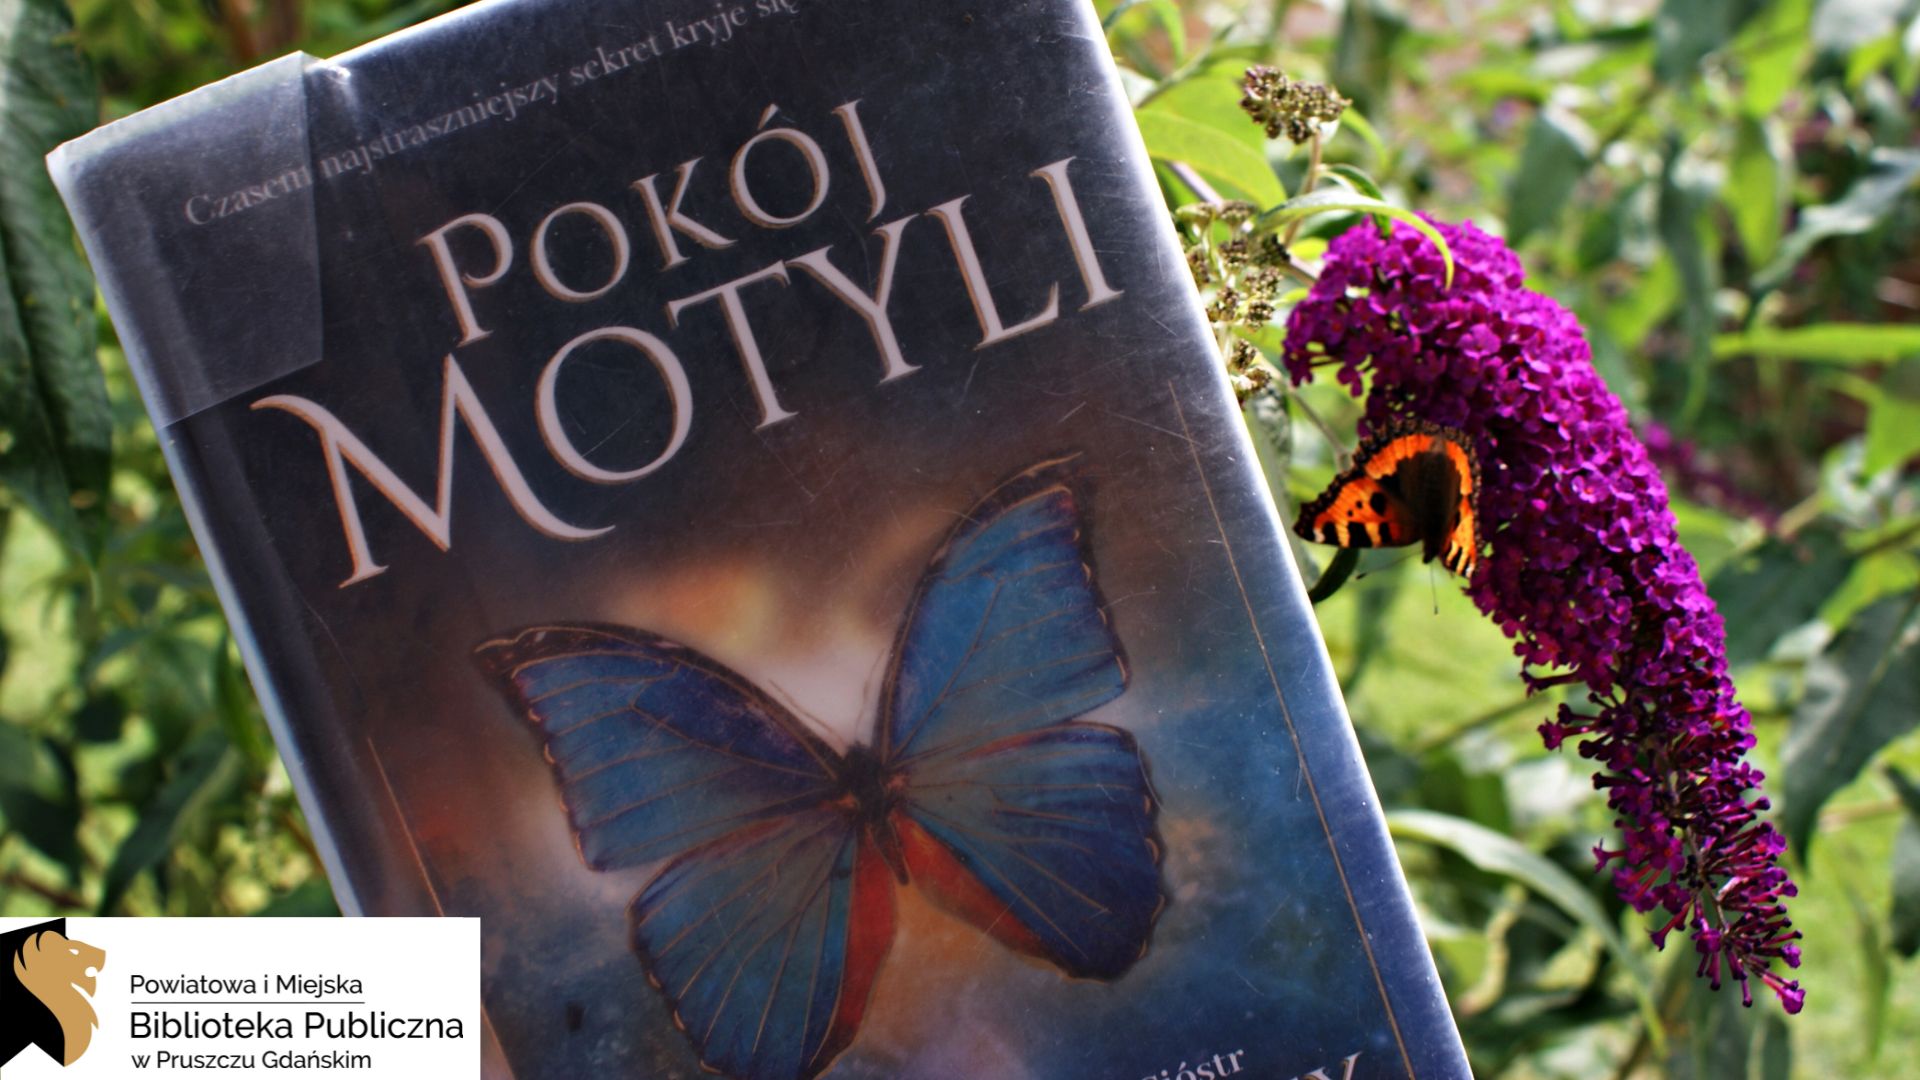 Książka pt. Pokój motyli jest trzymana obok kwiatu budlei, na którym siedzi motyl – rusałka pokrzywnik. Na okładce książki znajduje się niebieski motyl. W tle zielone liście.